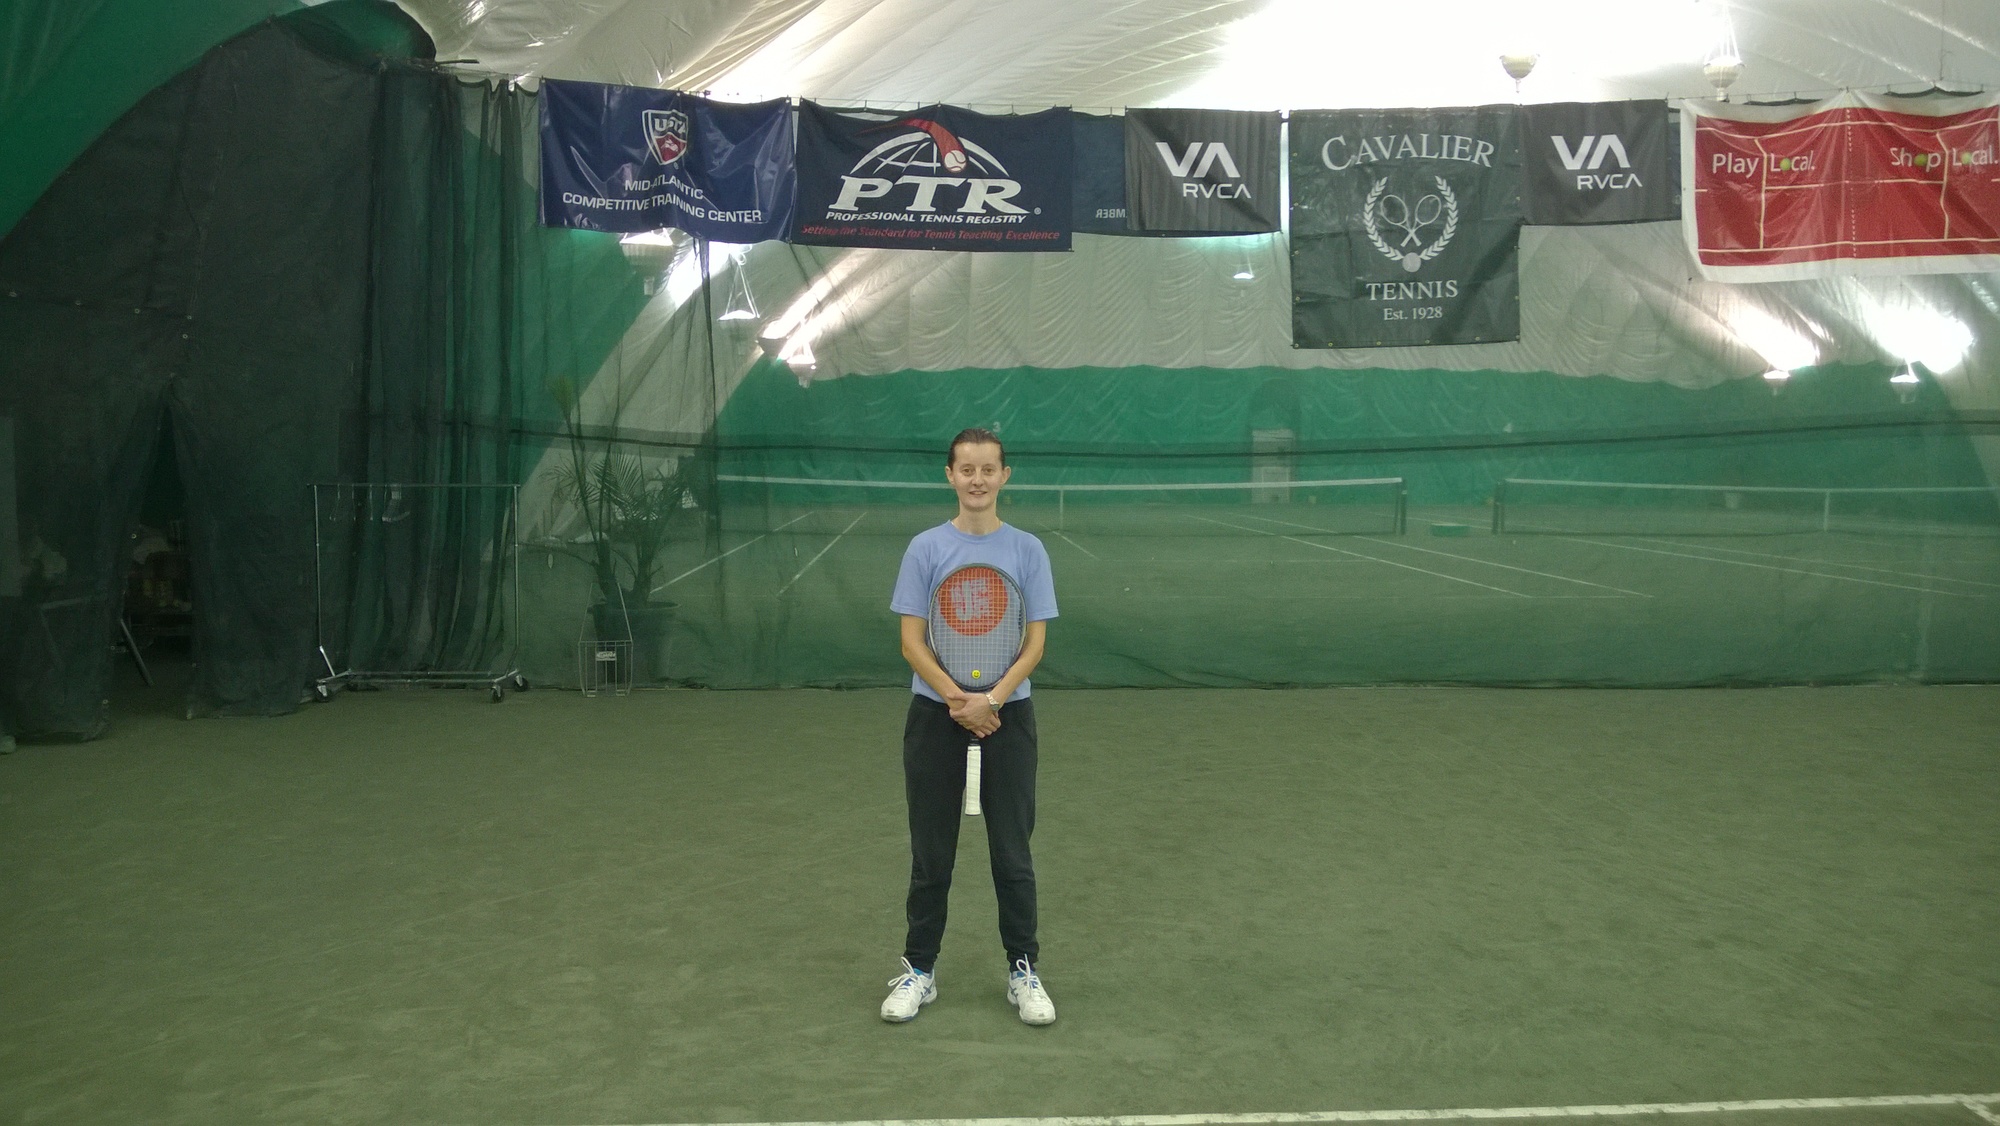 Adriana D. teaches tennis lessons in Falls Church, VA